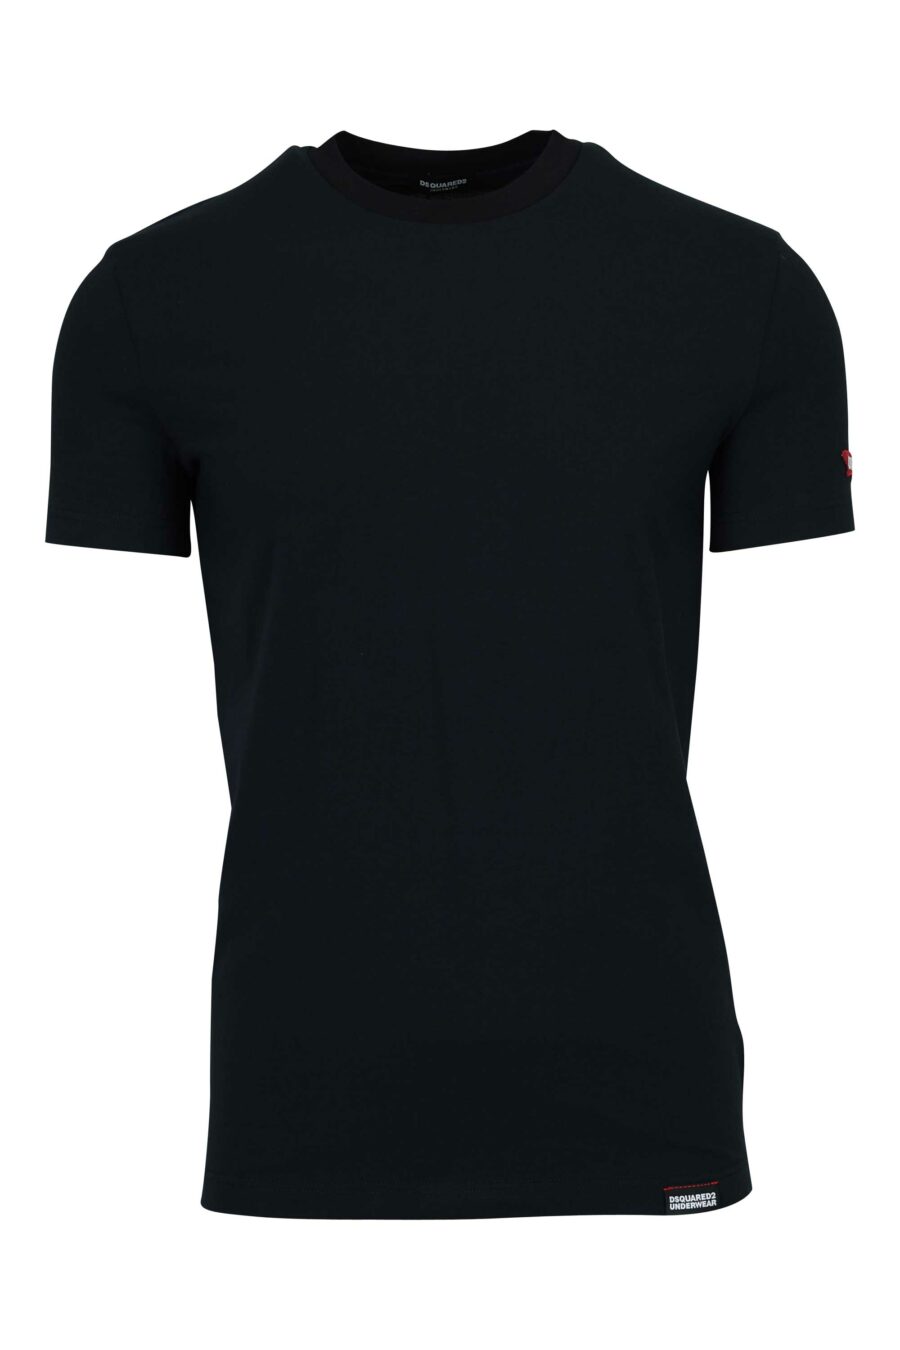 T-shirt noir avec étiquette logo - 8032674811202